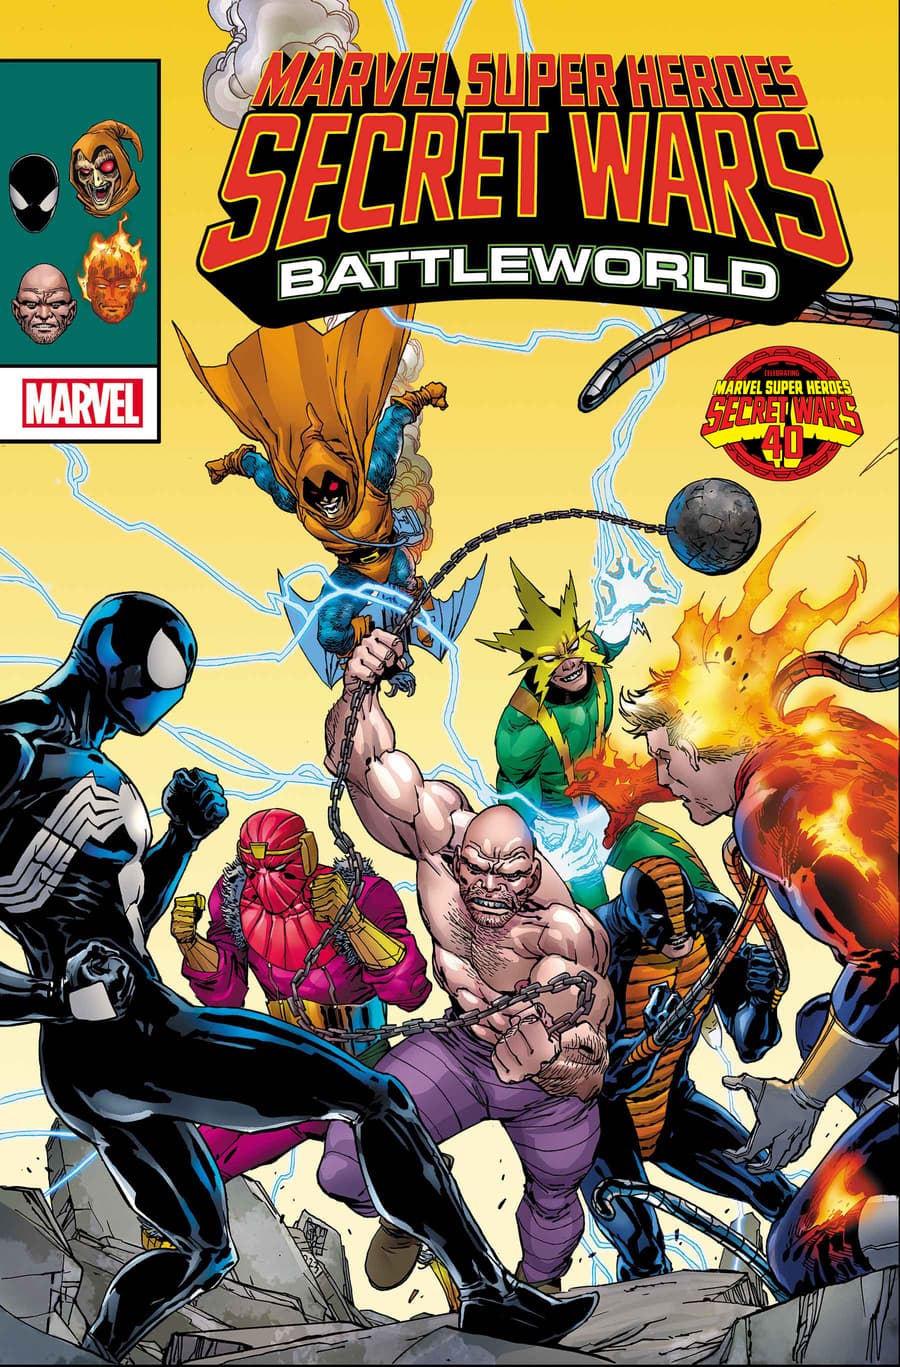 MARVEL SUPER HEROES SECRET WARS: BATTLEWORLD #2